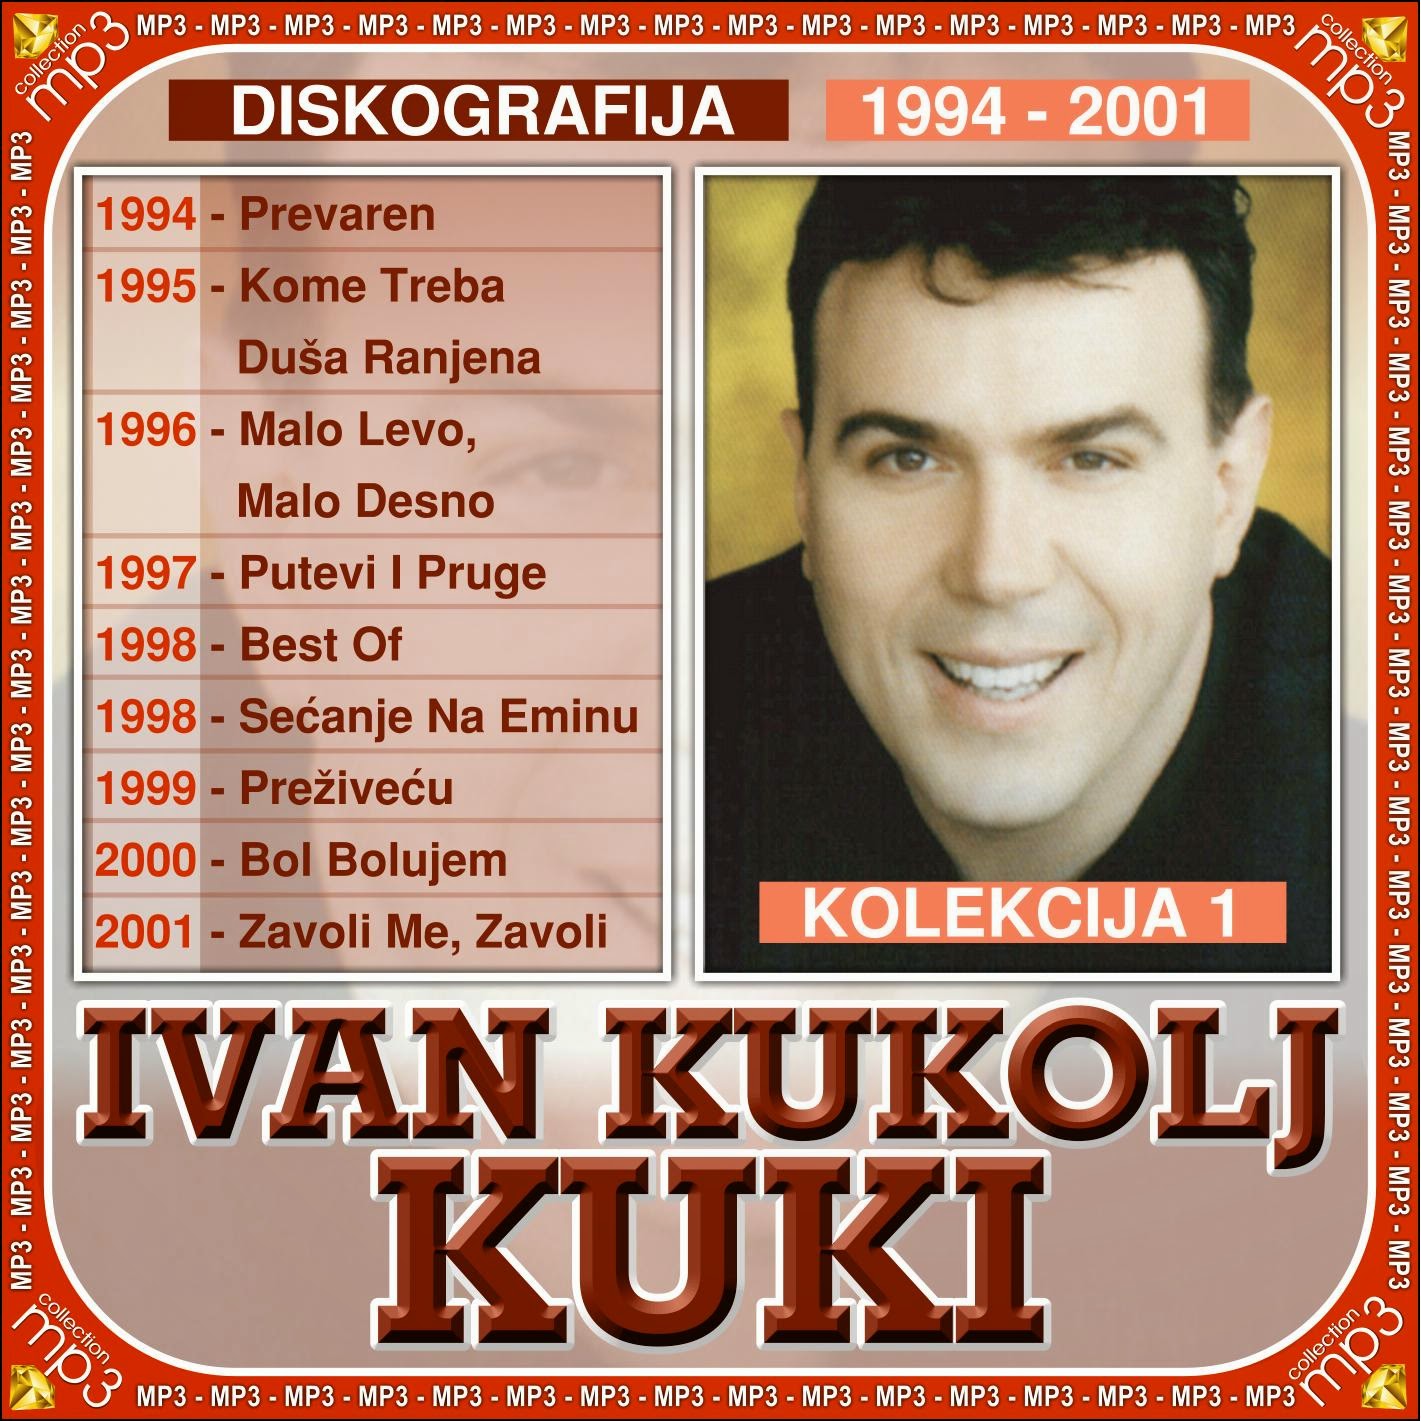 Ivan Kukolj Kuki (1994-2015) - Diskografija  Ivan-Kukolj-Kuki-1-1